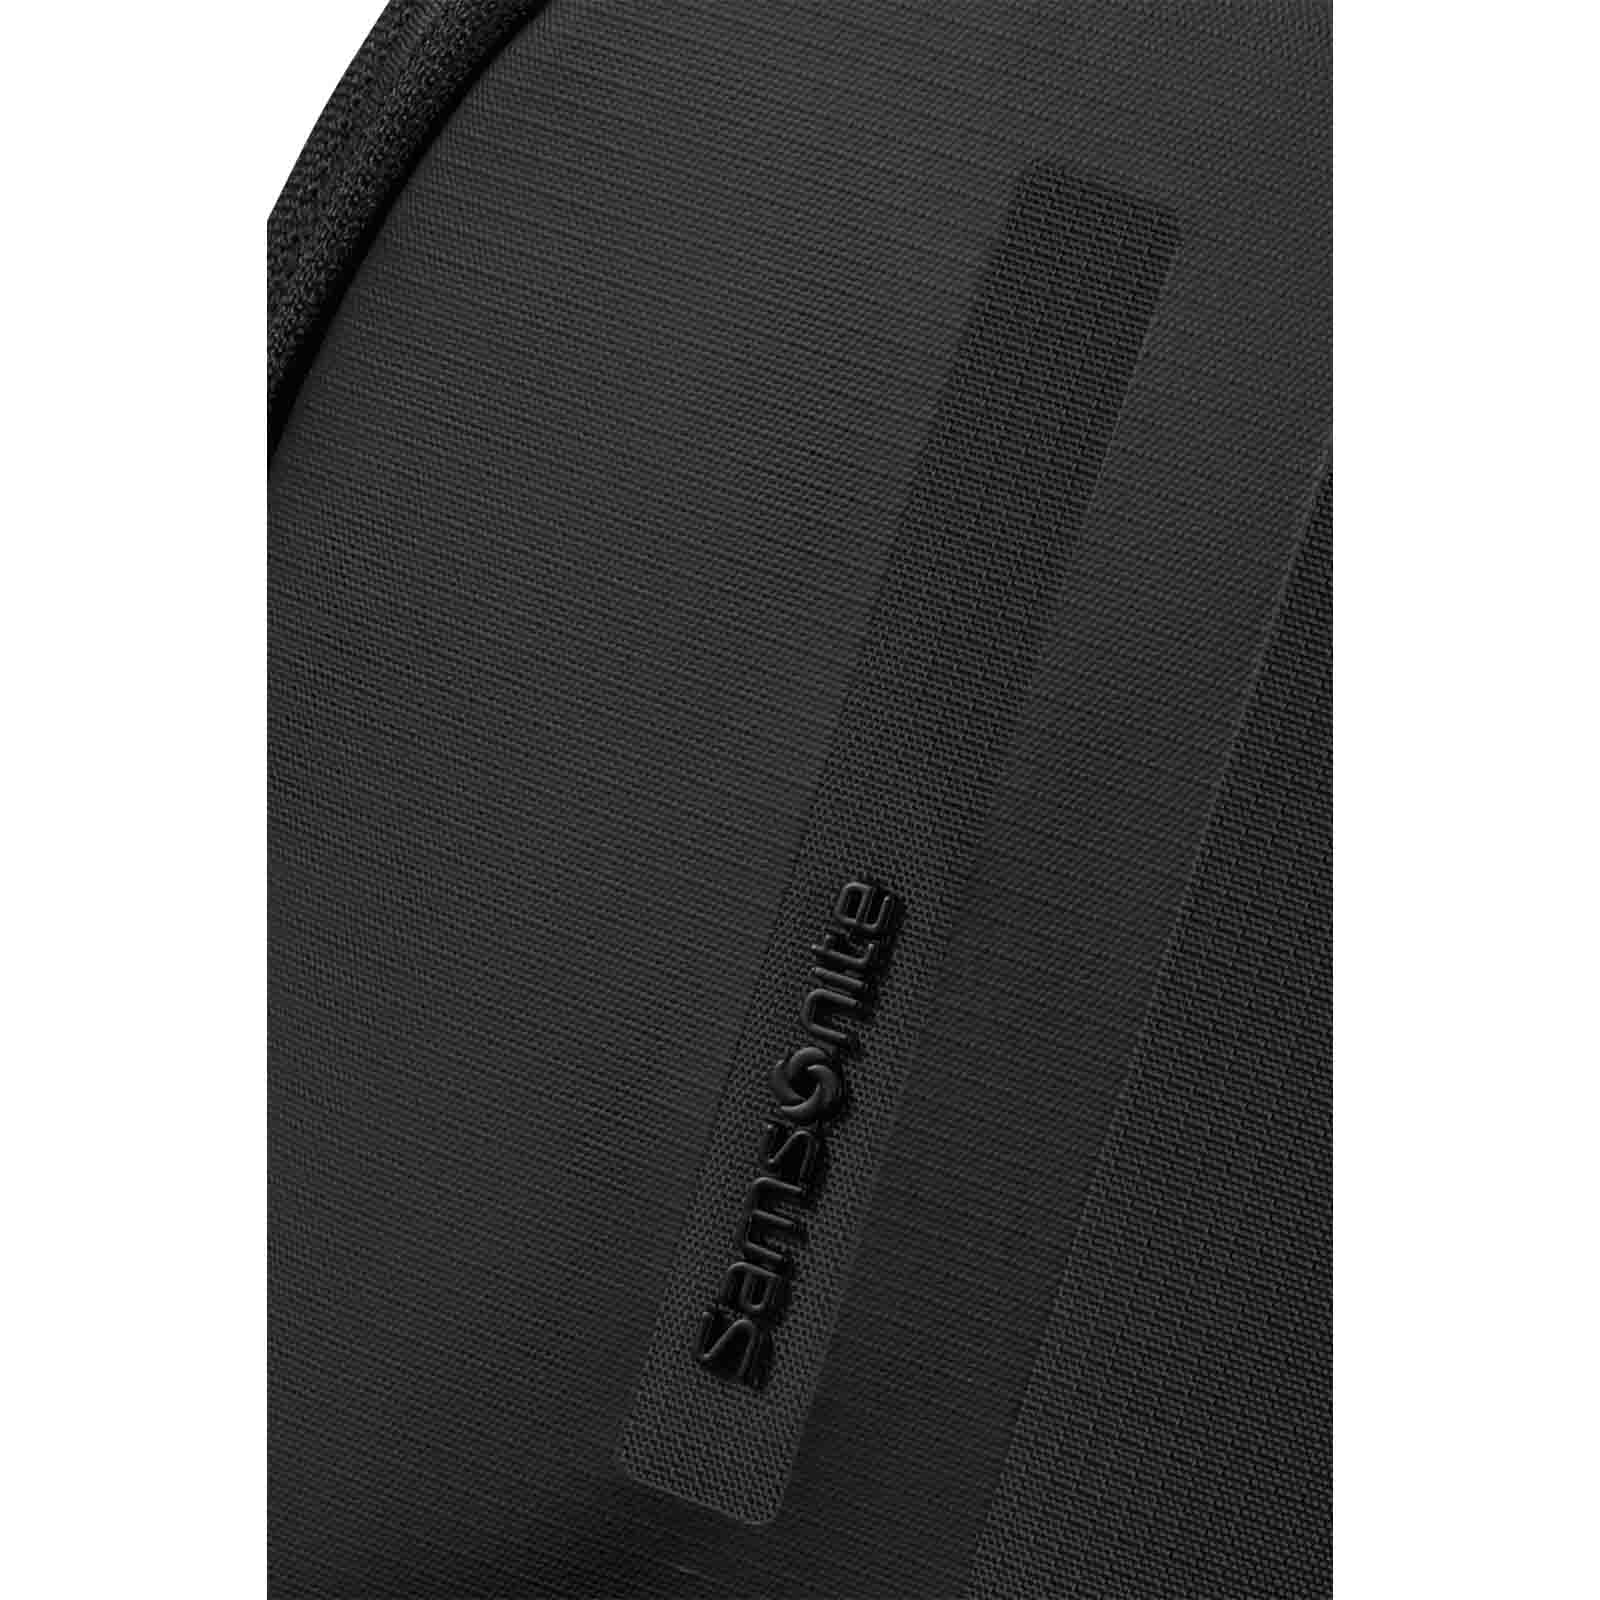 Samsonite-Biz2go-15-Inch-Laptop-Backpack-Black-Logo